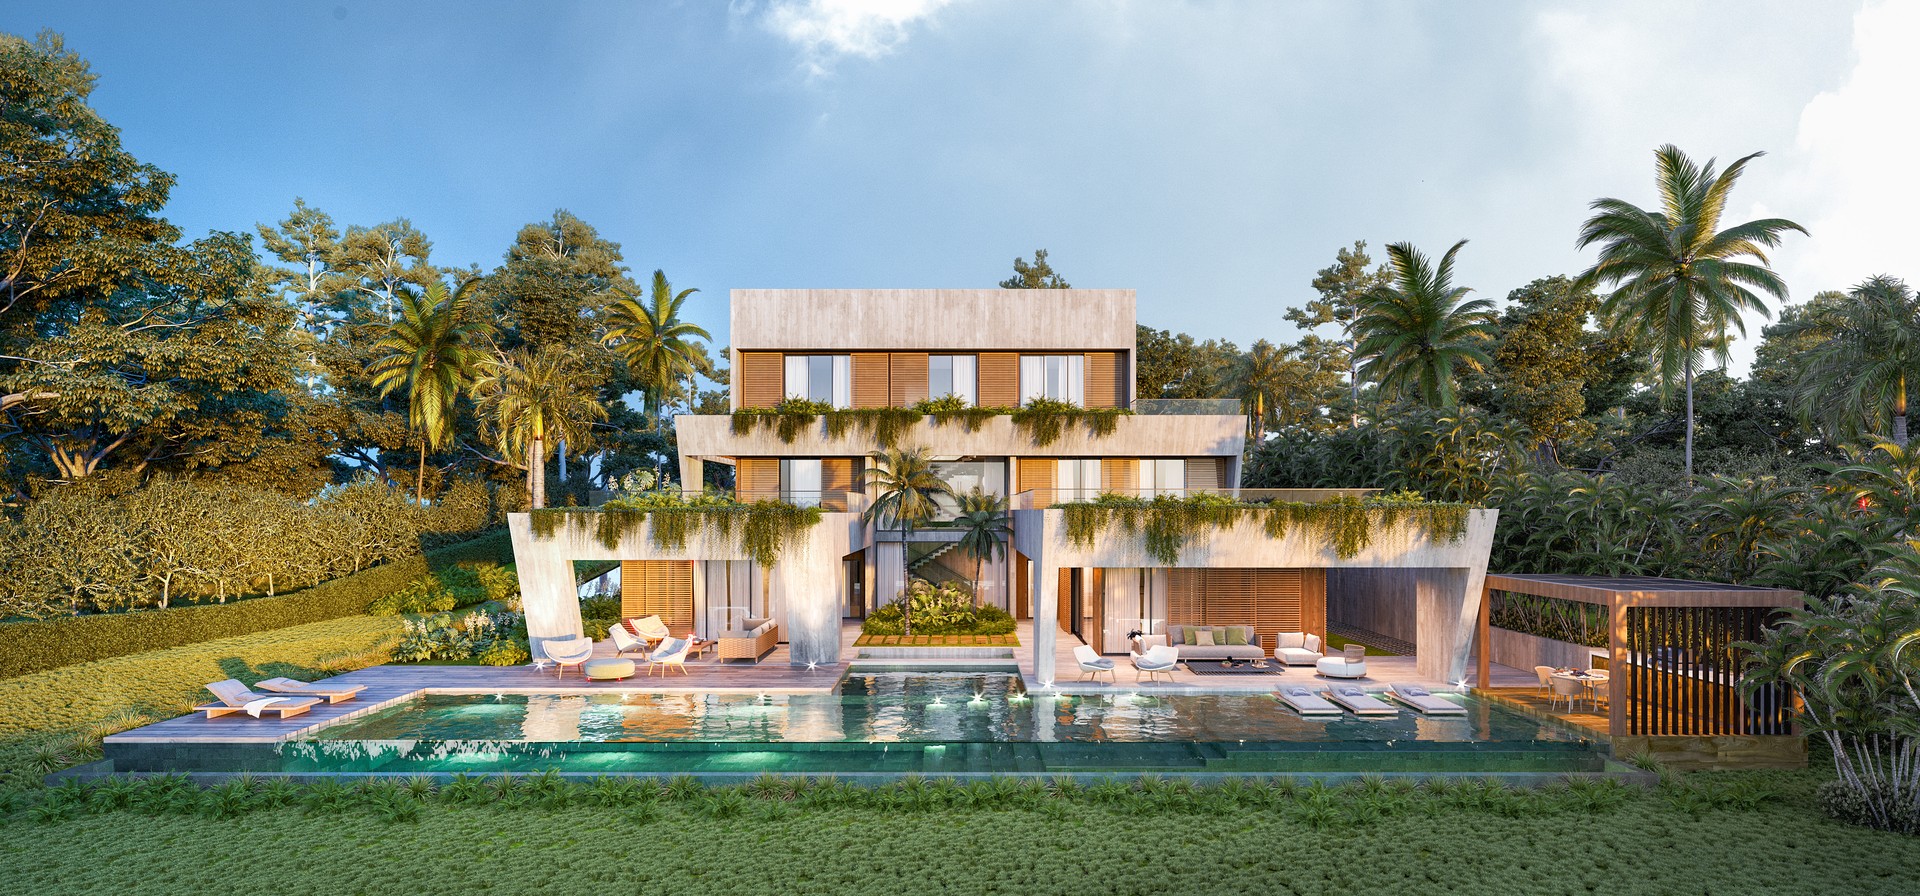 casas vacacionales y villas - Villas modernas disponible en Cap Cana con 6 habitaciones 6 baños 